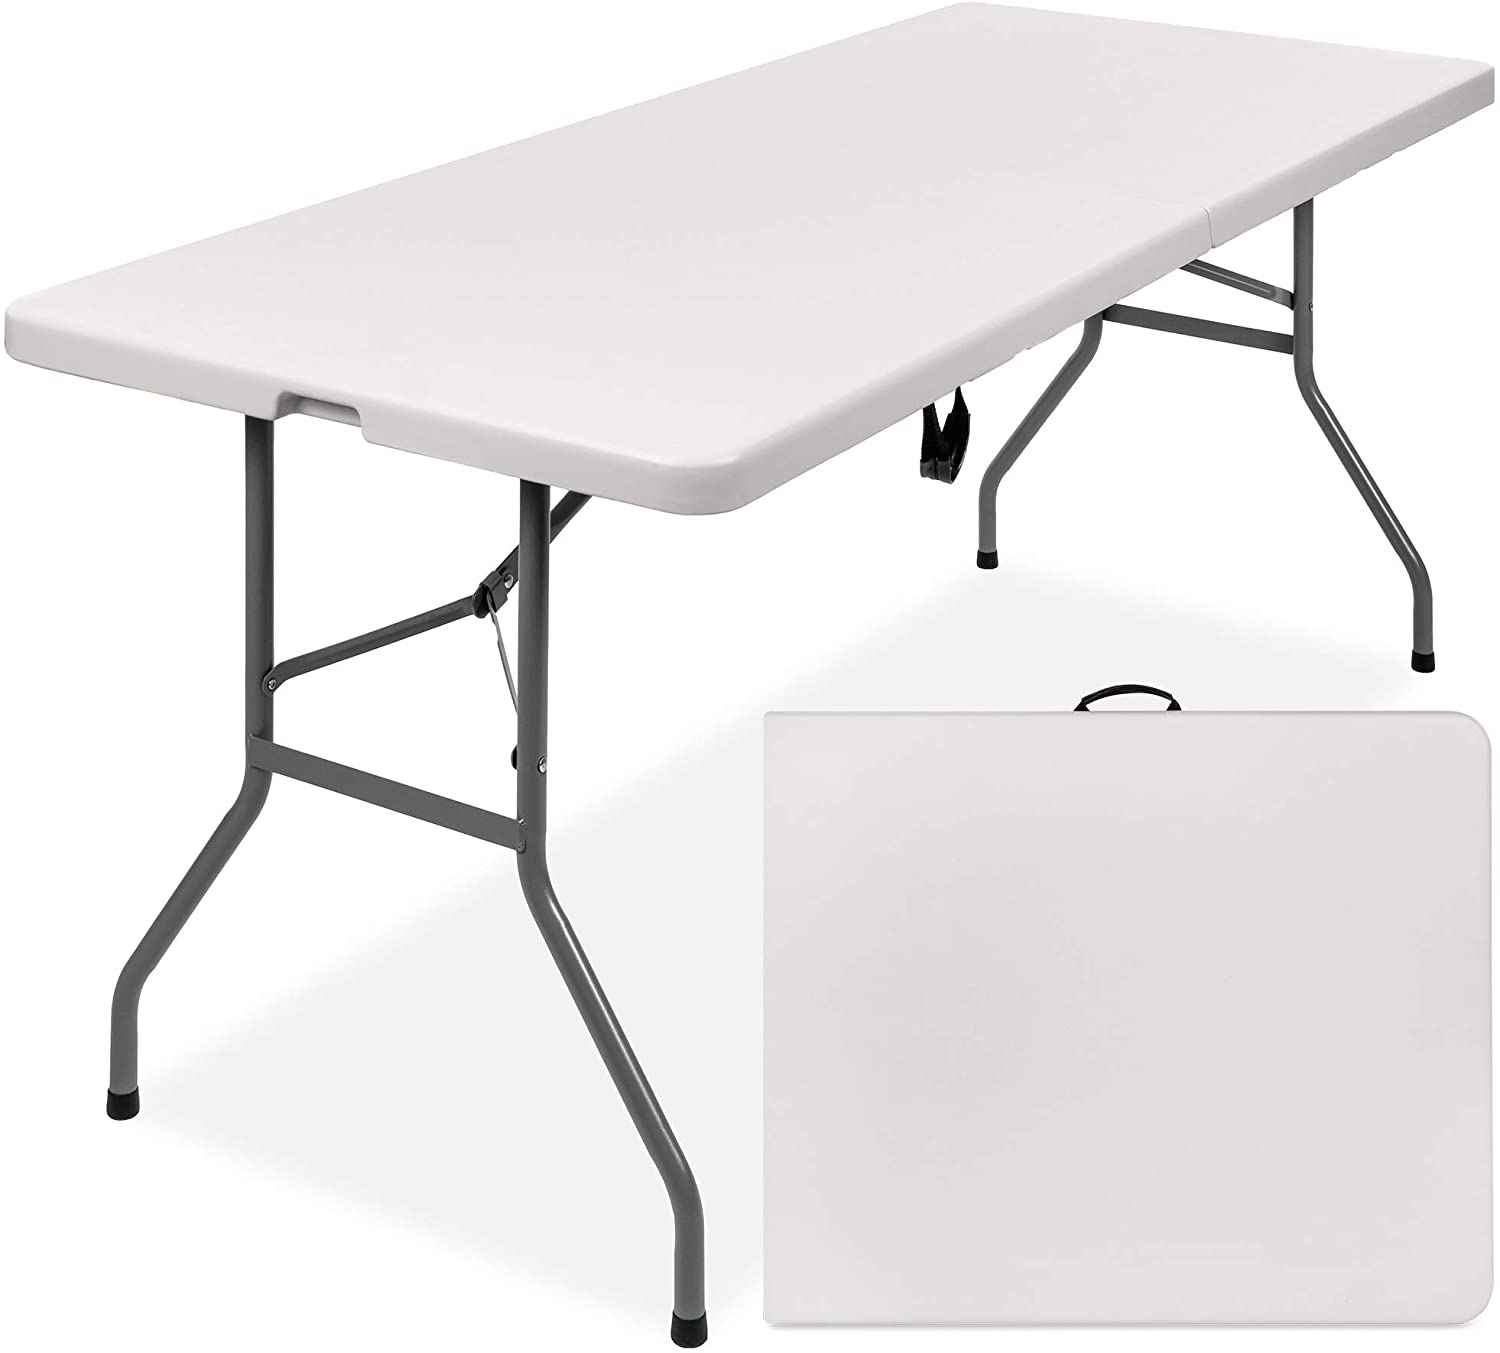 72 in. Granite White Plastic Fold-In-Half Folding Table